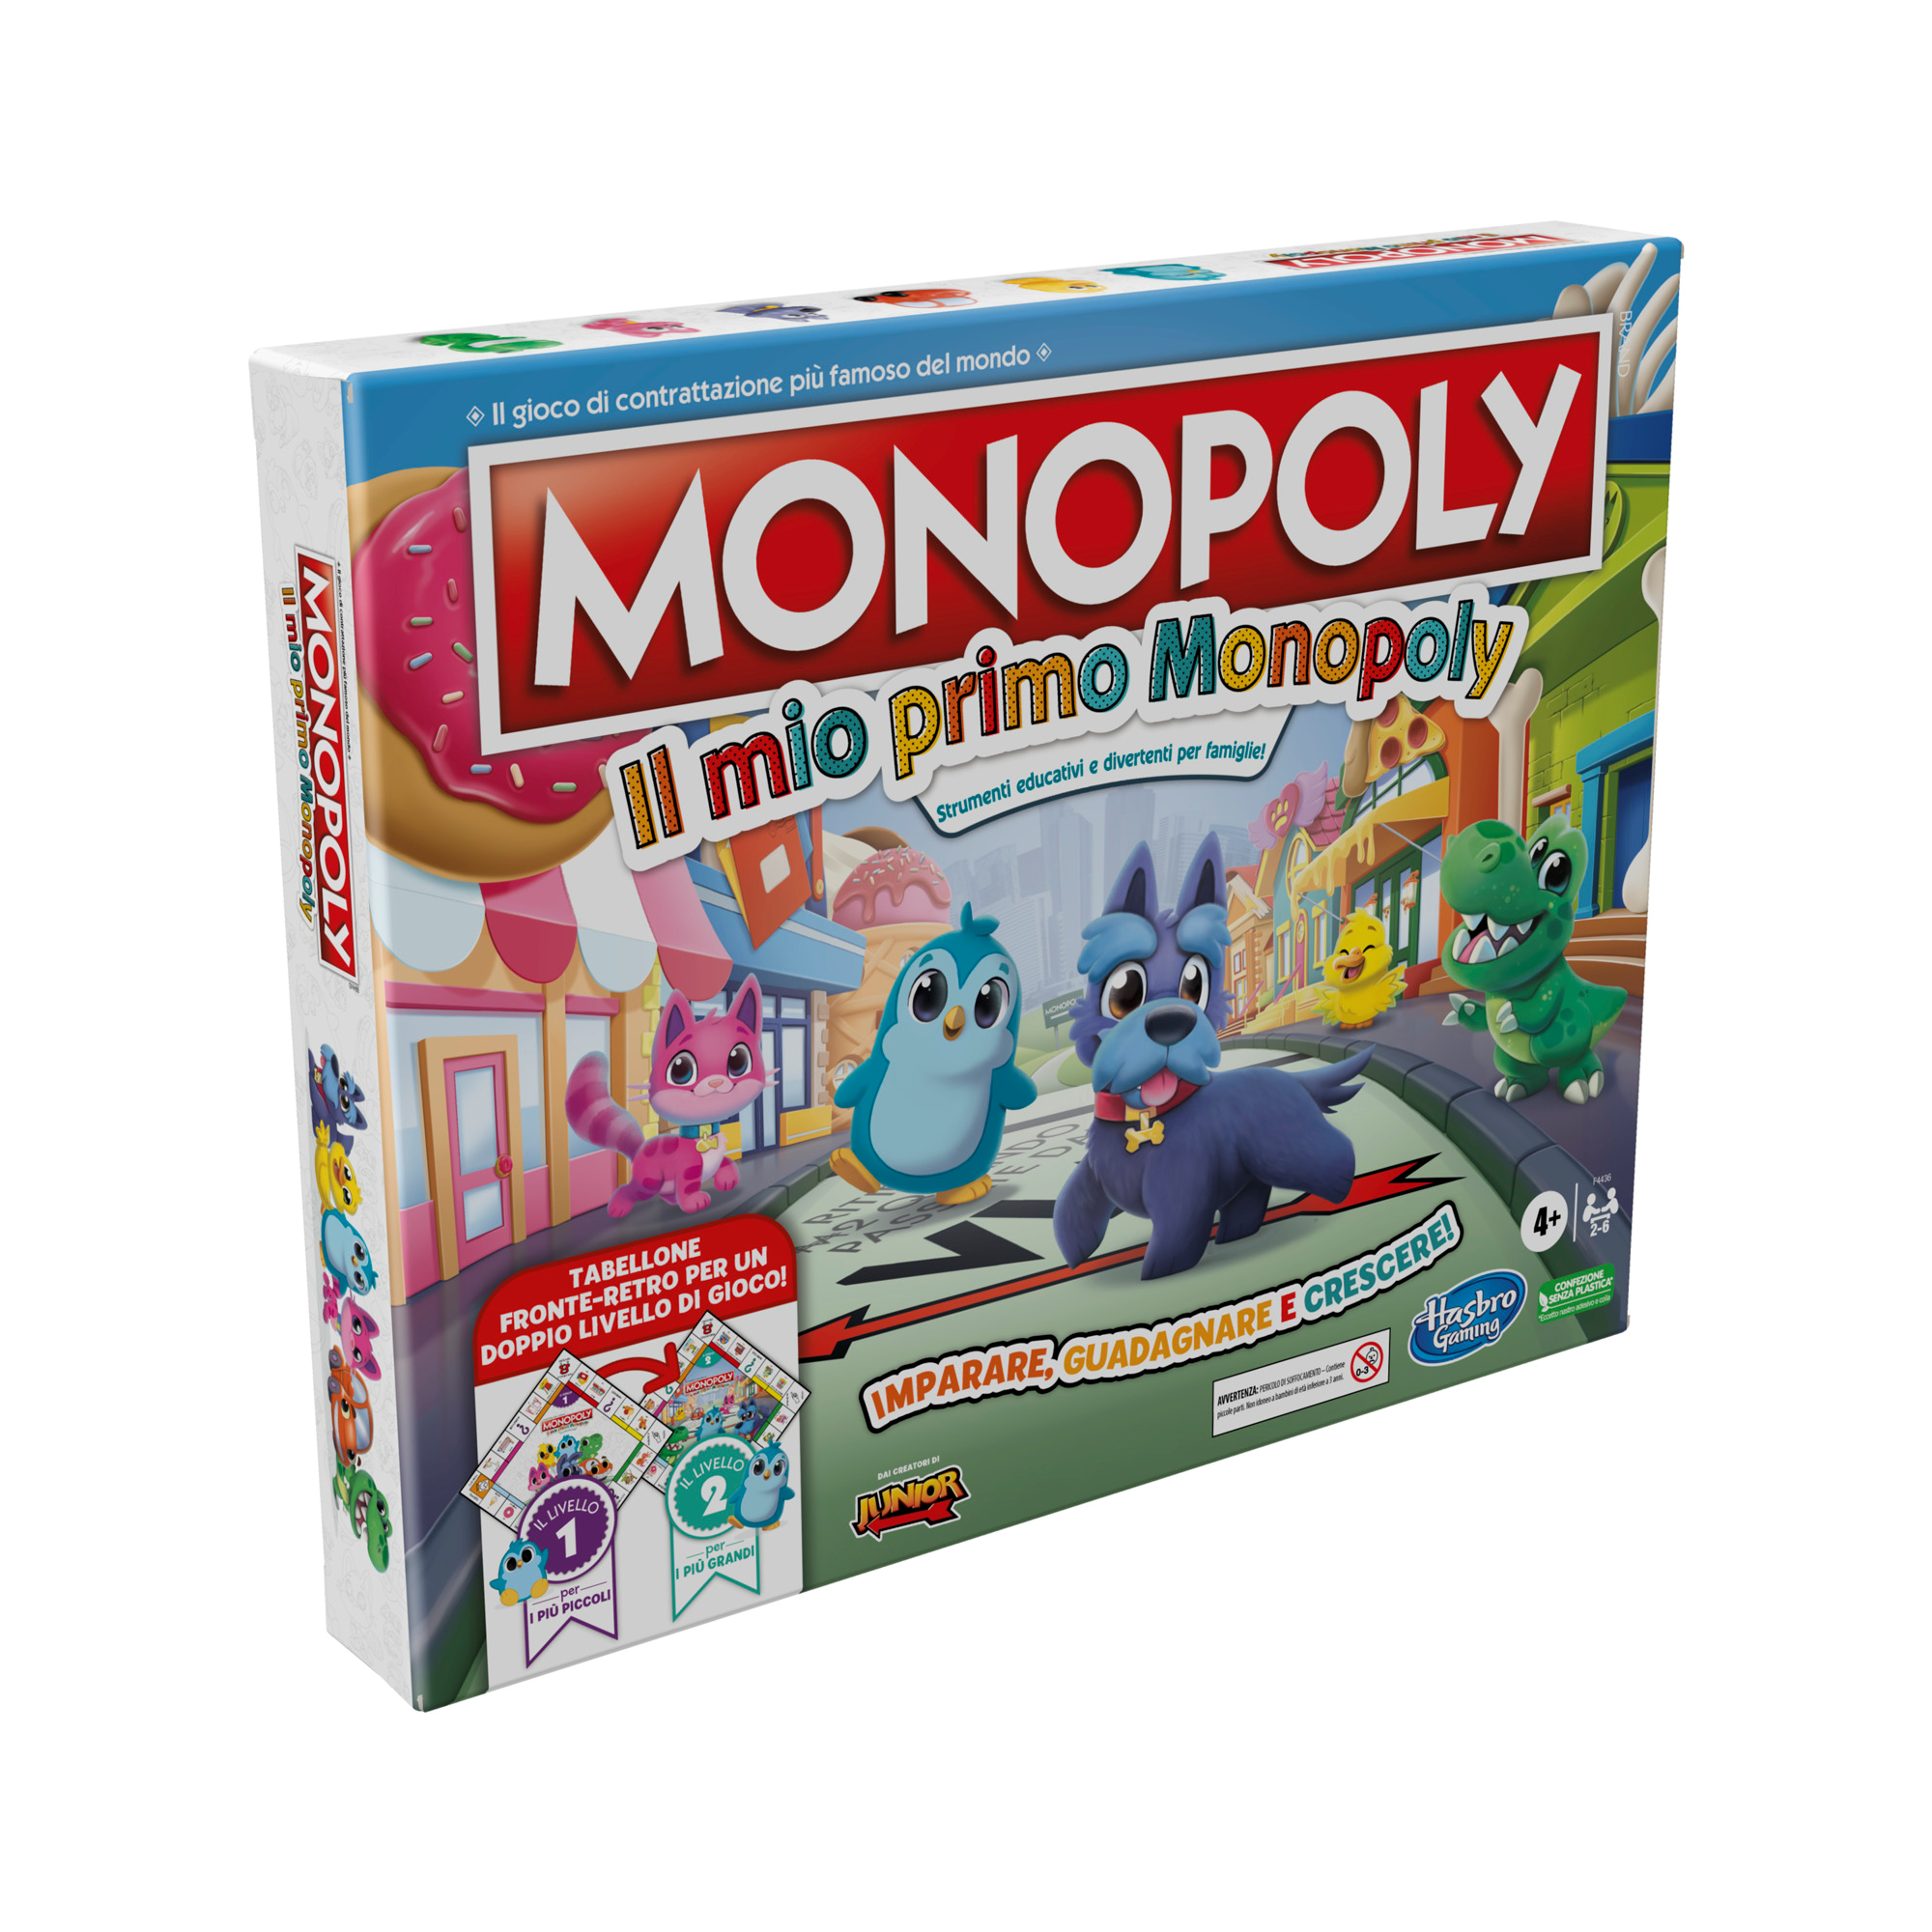 Monopoly: il mio primo monopoly, gioco da tavolo per famiglie, per